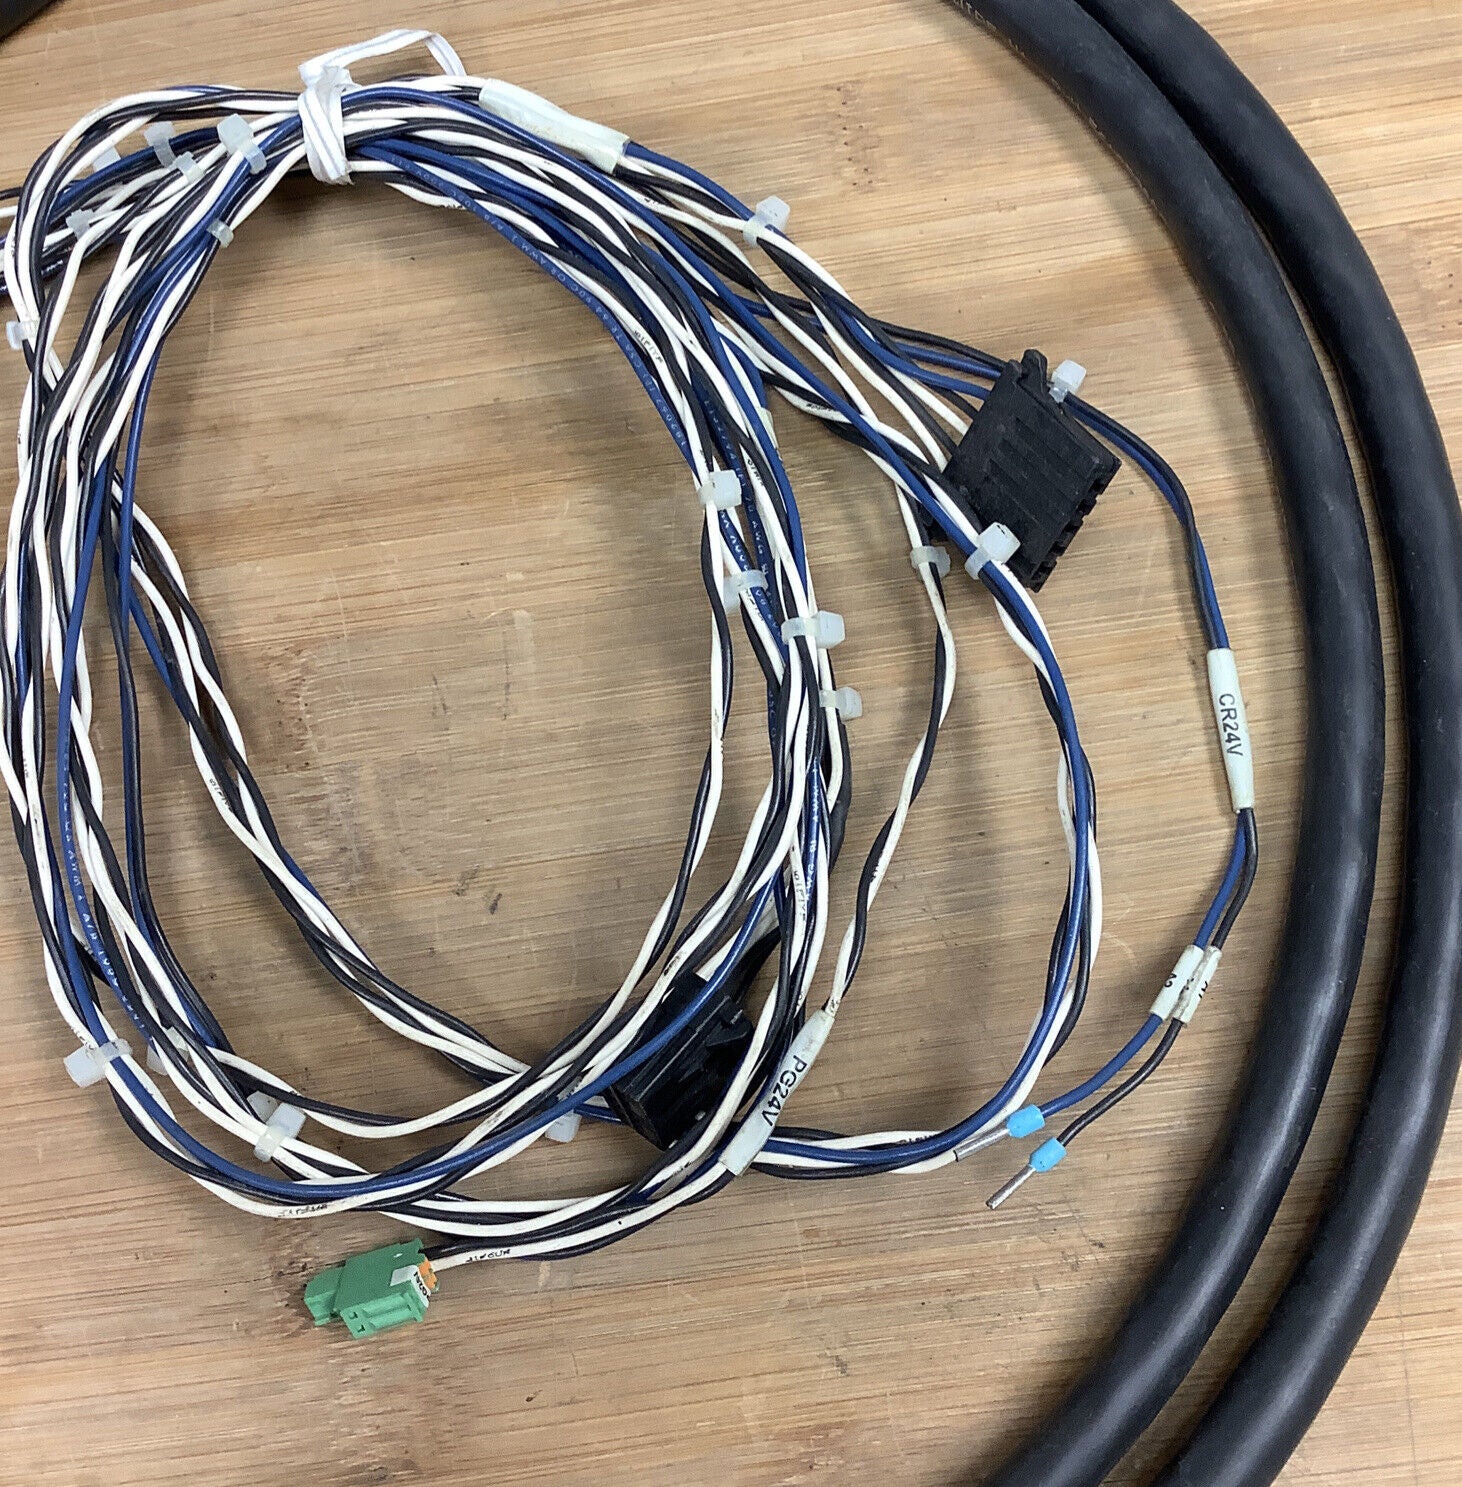 Fanuc EE-4696-544-002 ESTOP / BRAKE Cable / Harness (CBL110)